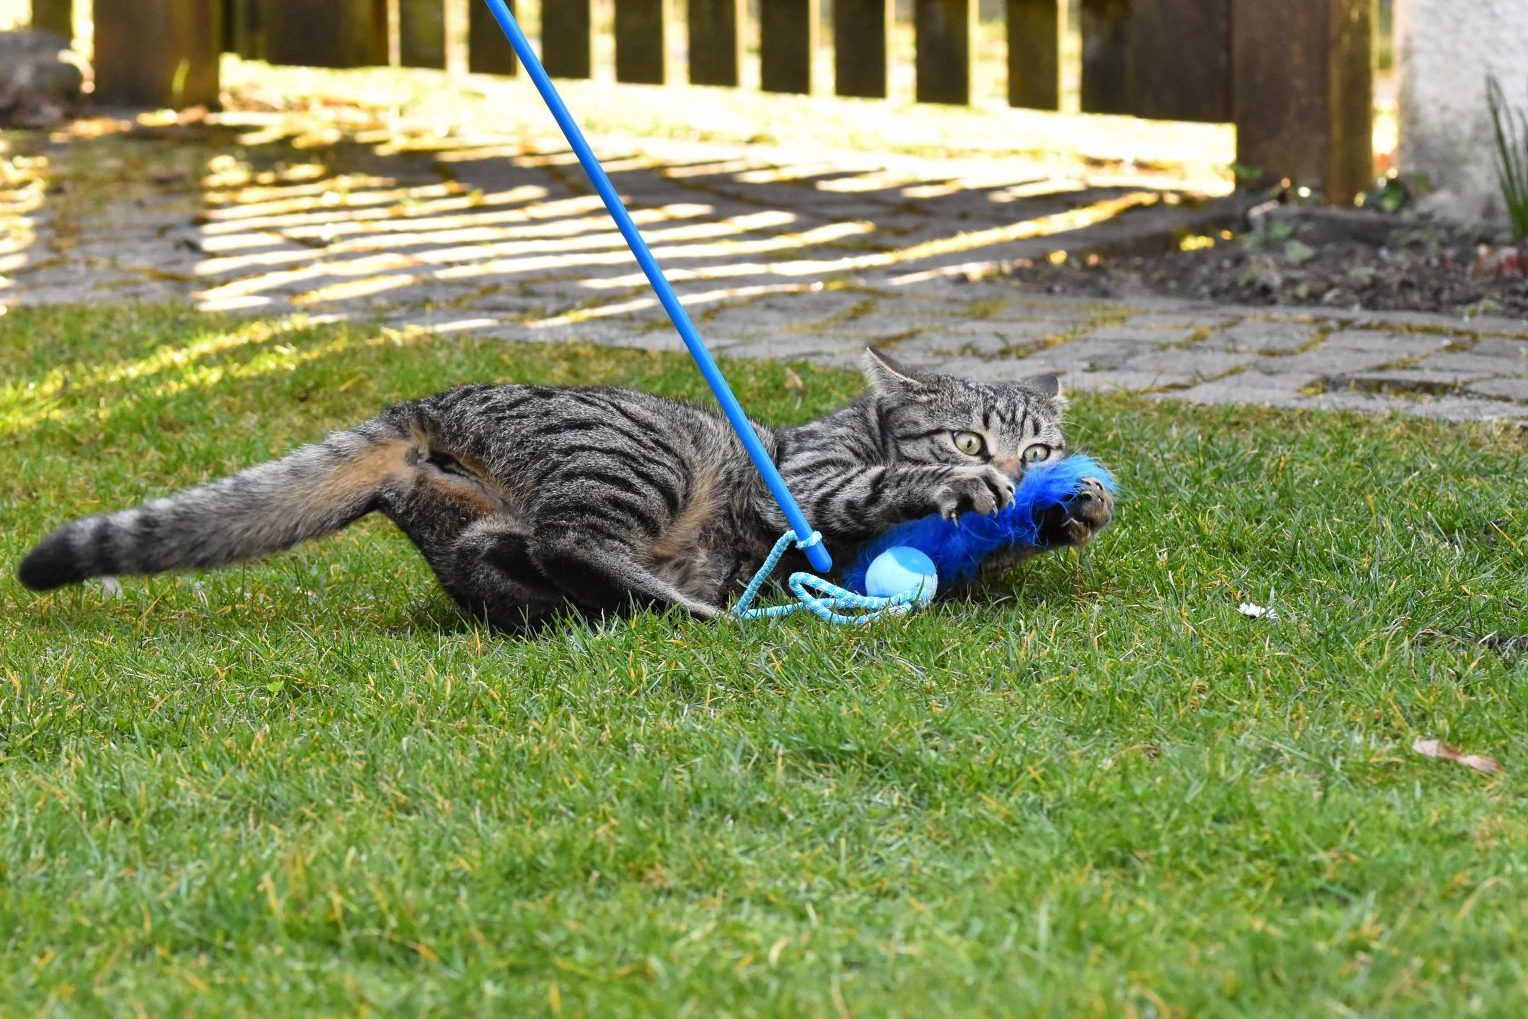 Eine kleine getiegerte Katze fängt ein blaues Spielzeug, das mit einer Schnur an einem Stab befestigt ist. Sie beißt in die blaue Feder und umkrallt sie. Man sieht ihren Spaß.